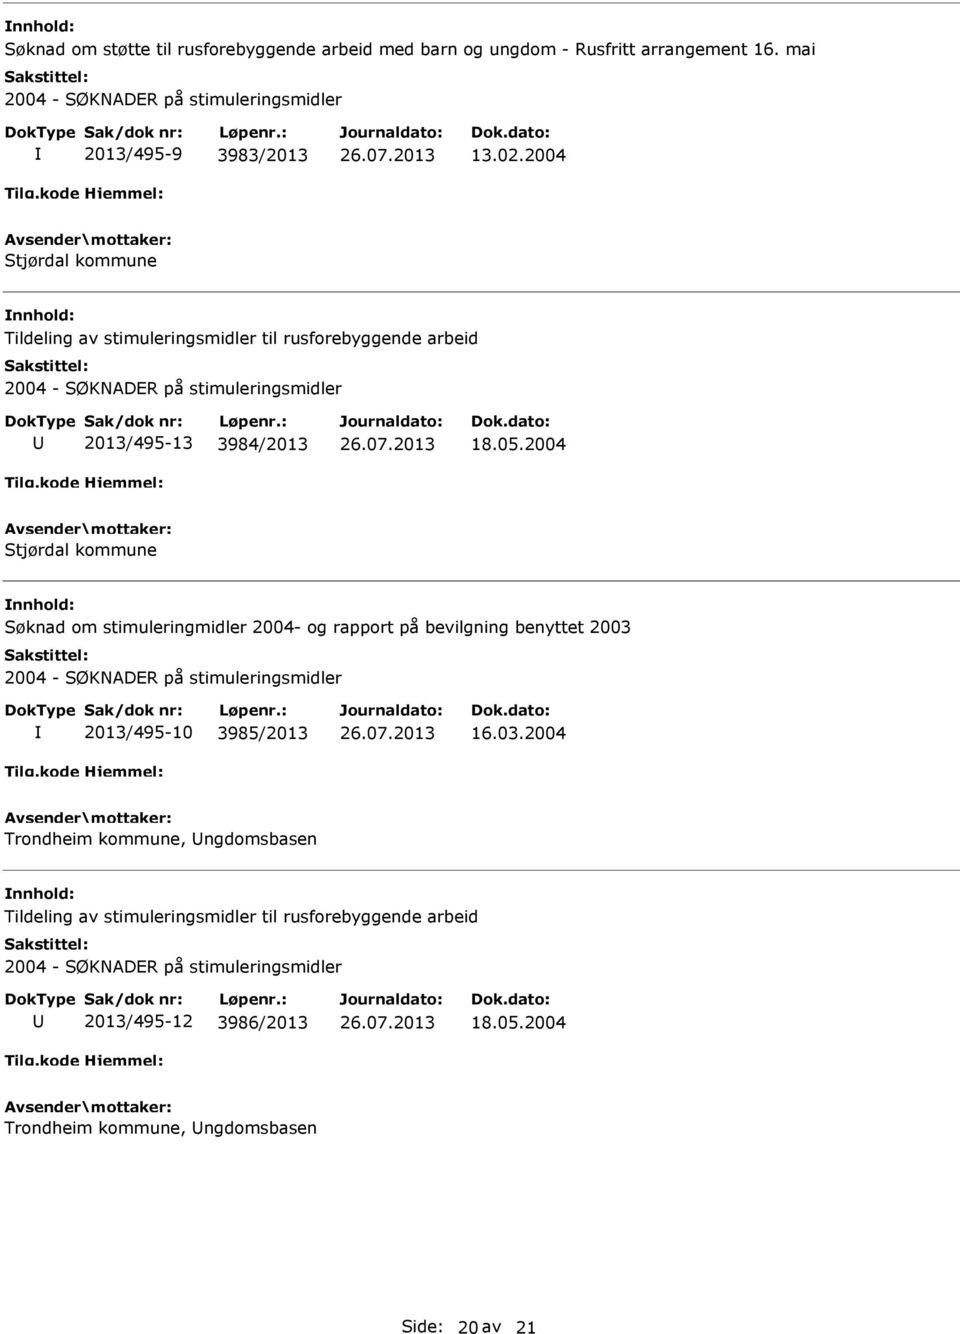 2004 Stjørdal kommune Søknad om stimuleringmidler 2004- og rapport på bevilgning benyttet 2003 